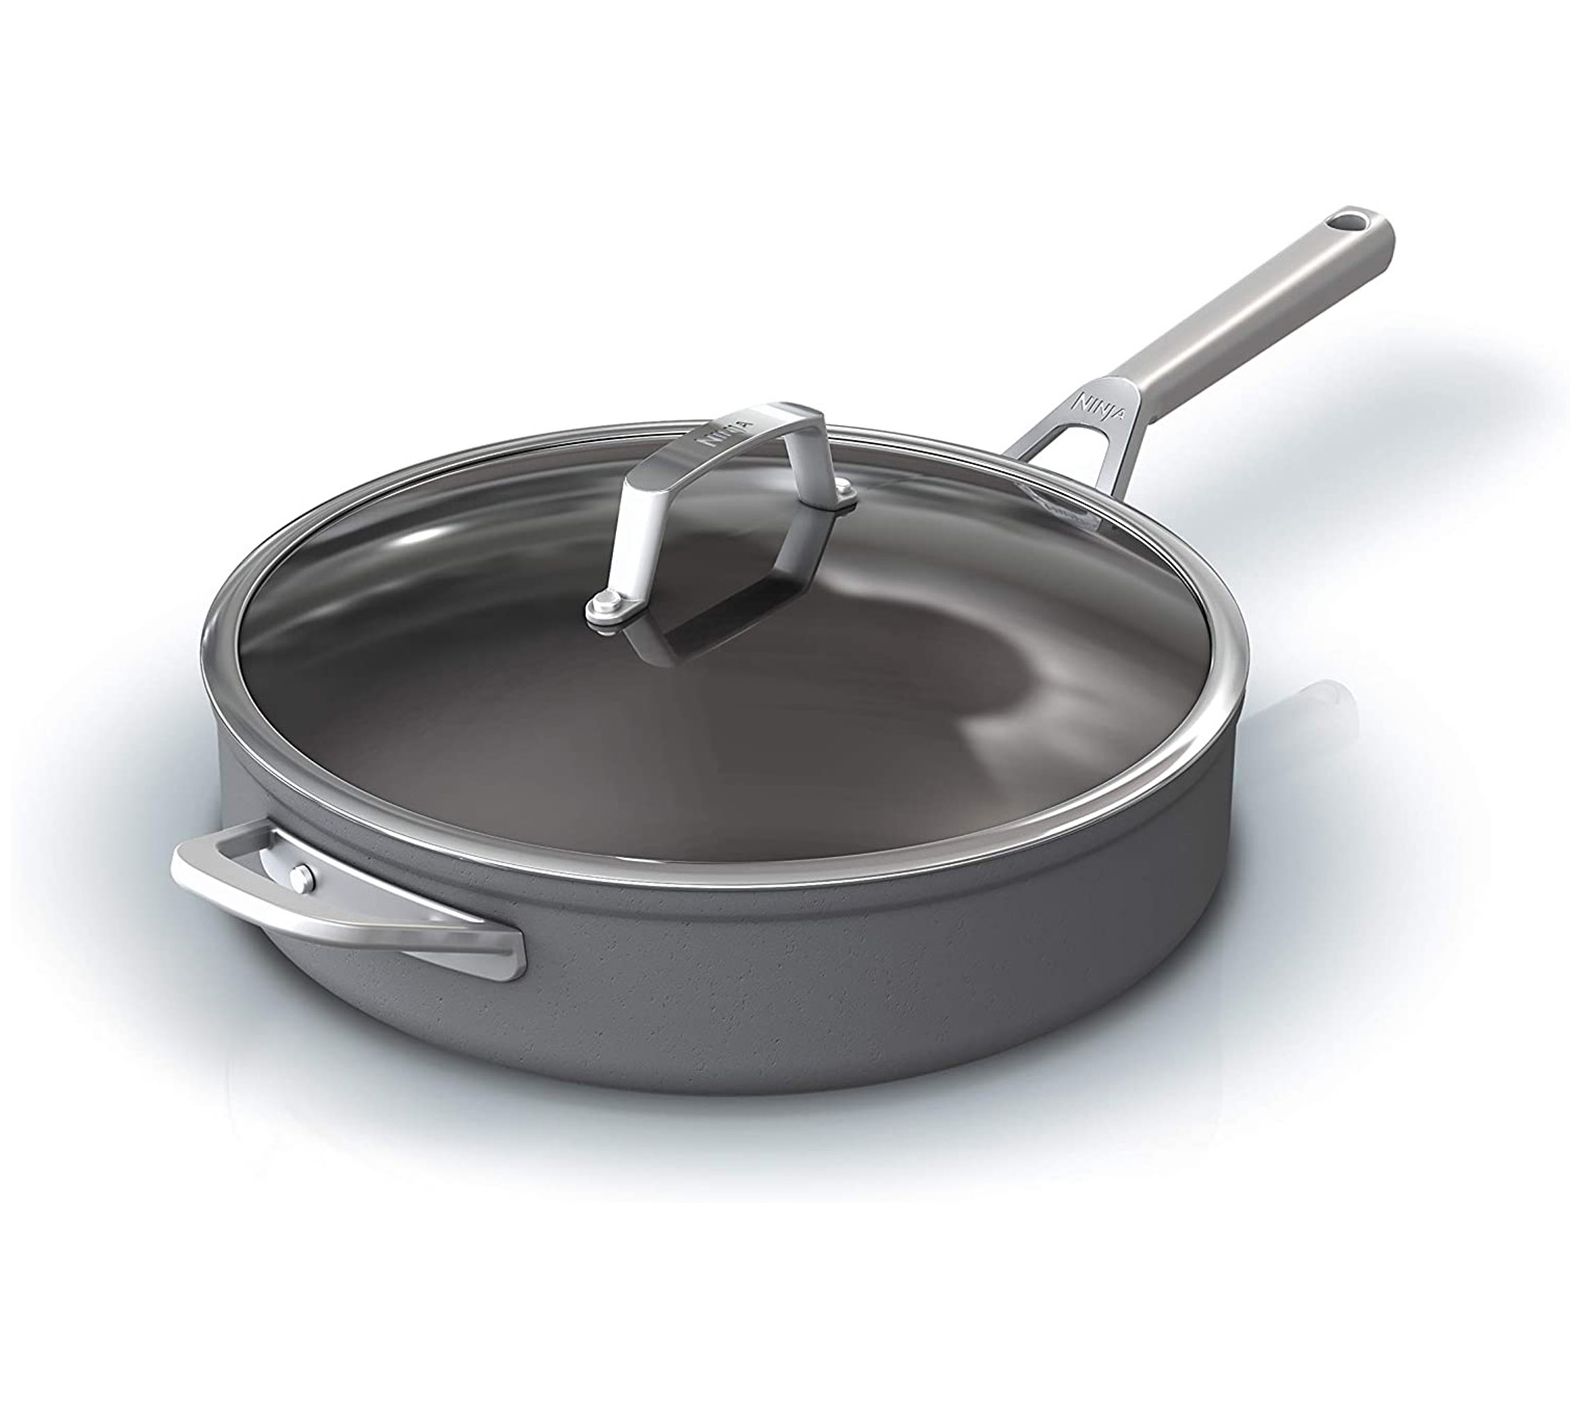 Ninja Aluminum Non Stick 1 -Piece Frying Pan Set Frying Pan / Skillet Set &  Reviews